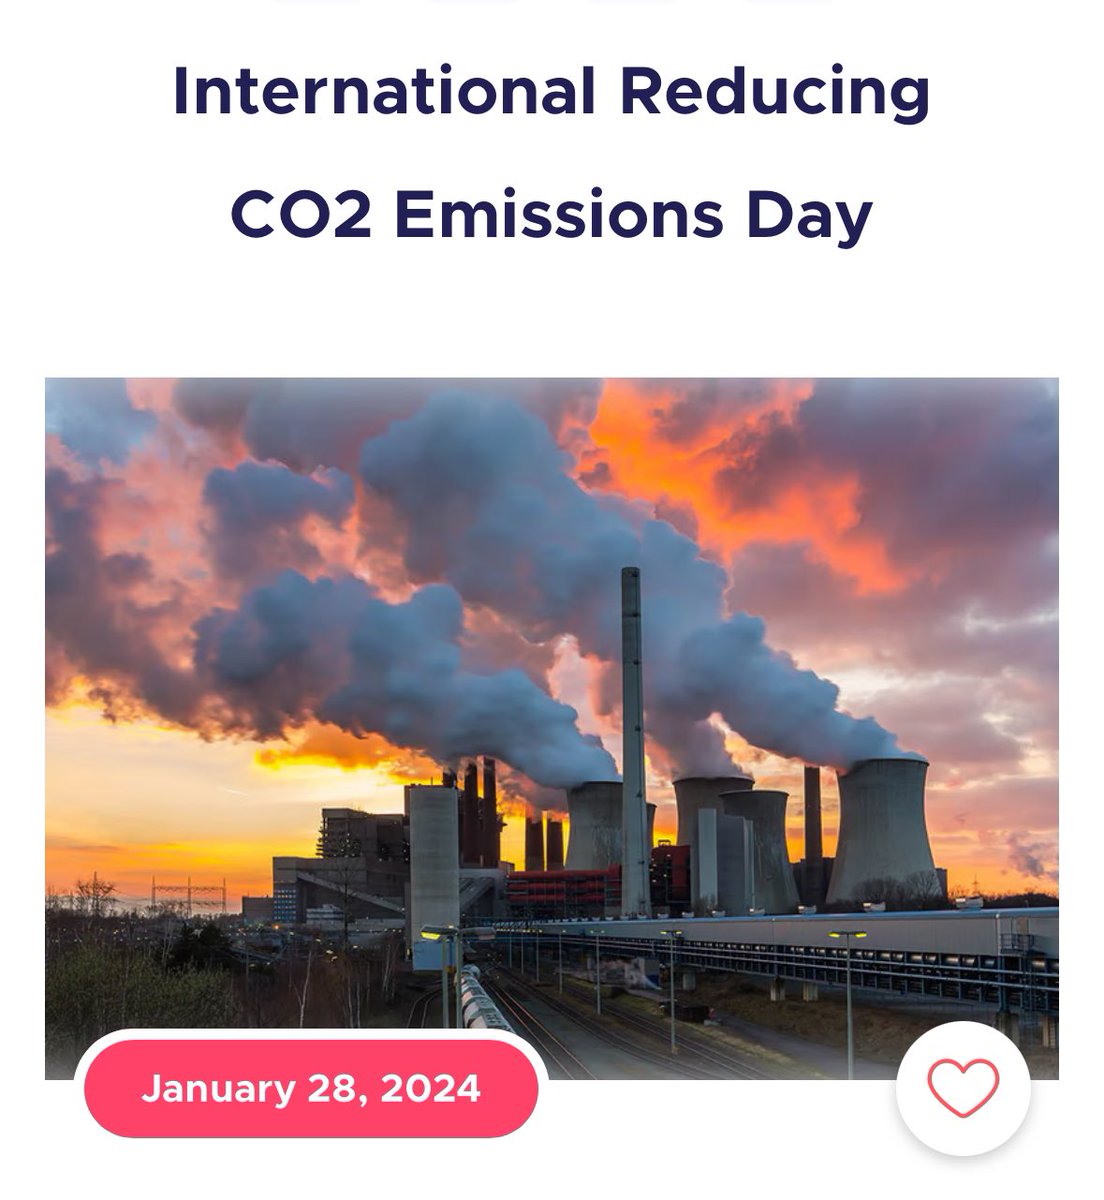 بمناسبة اليوم العالمي لخفض الانبعاثات الكربونية International Reducing #CO2 Emissions Day أكتب لكم عن أهمية استخدام التقنيات الحديثة لرصد #تلوث_الهواء وهما : 1.نظام مراقبة الانبعاثات المستمرة Continuous Emissions Monitors (CEMs) 2.نظام مراقبة الانبعاثات التنبؤية Predictive